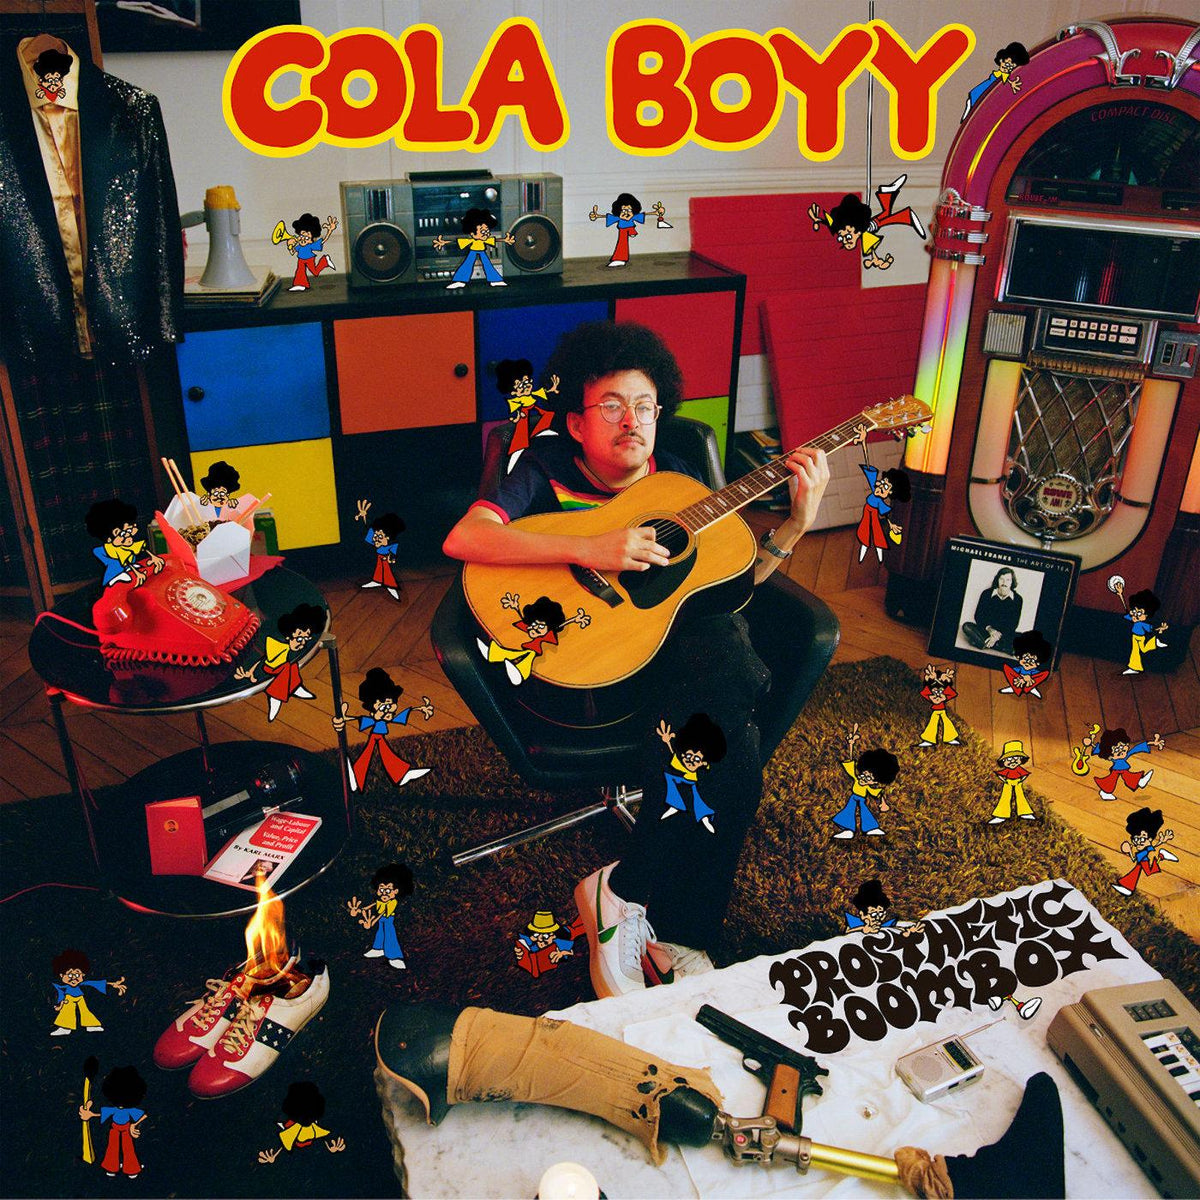 Cola Boyy - Prosthetic Boombox